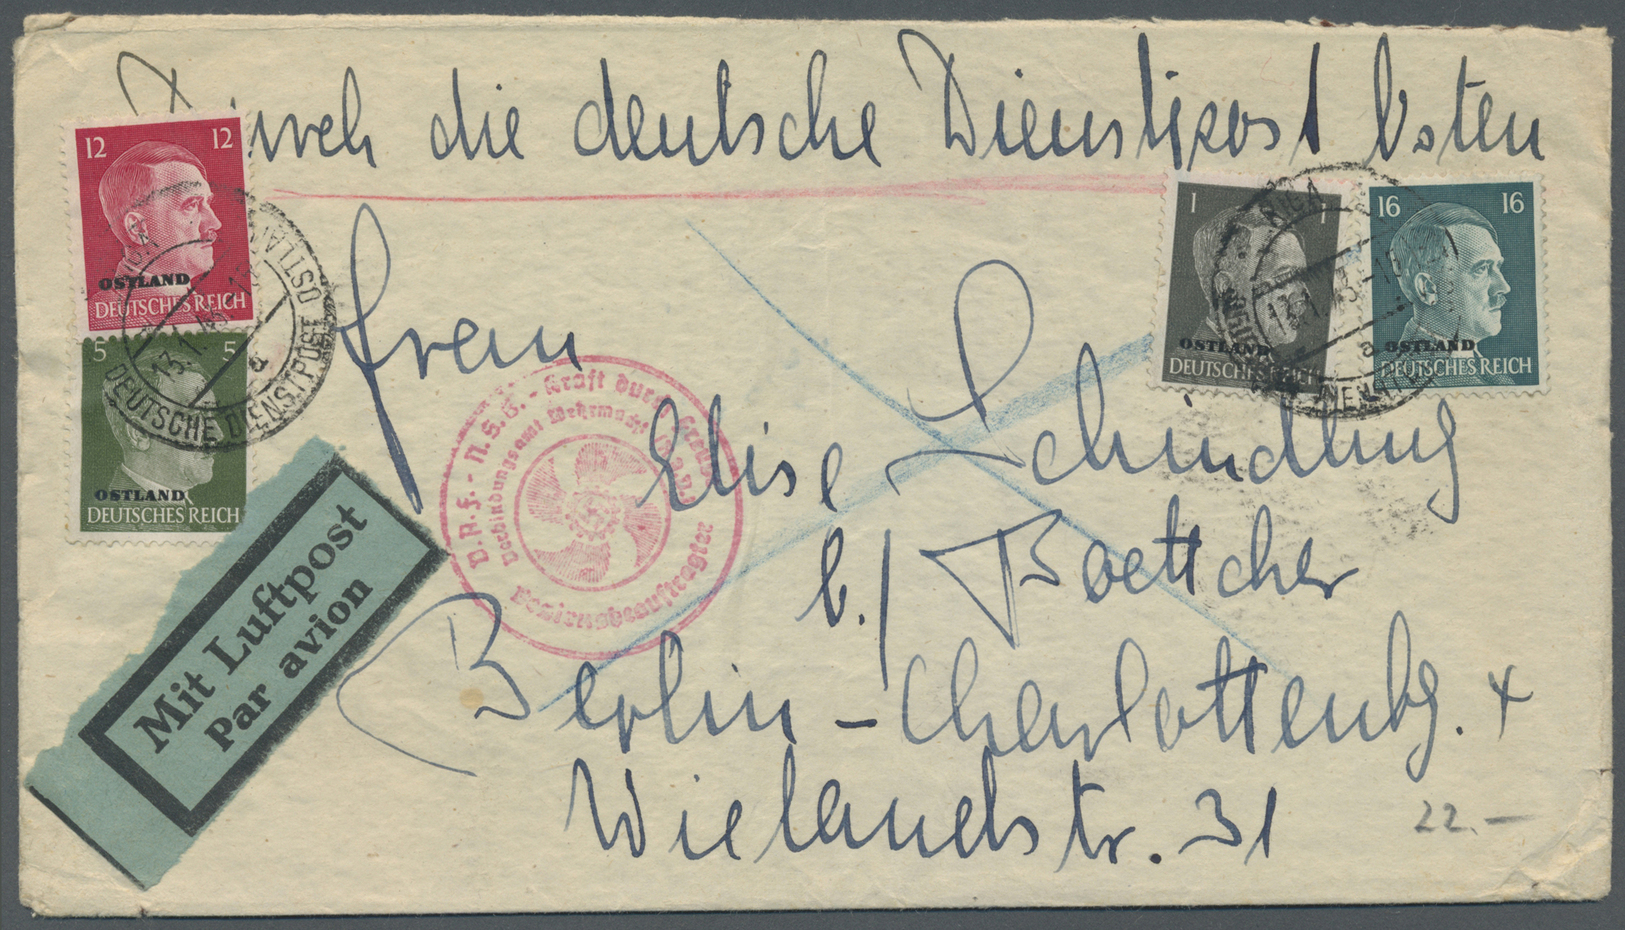 GA/Br/ Deutschland: 1920 - 1981 (ca.), umfangreicher Posten von über 120 meist großformatigen Belegen, dabe